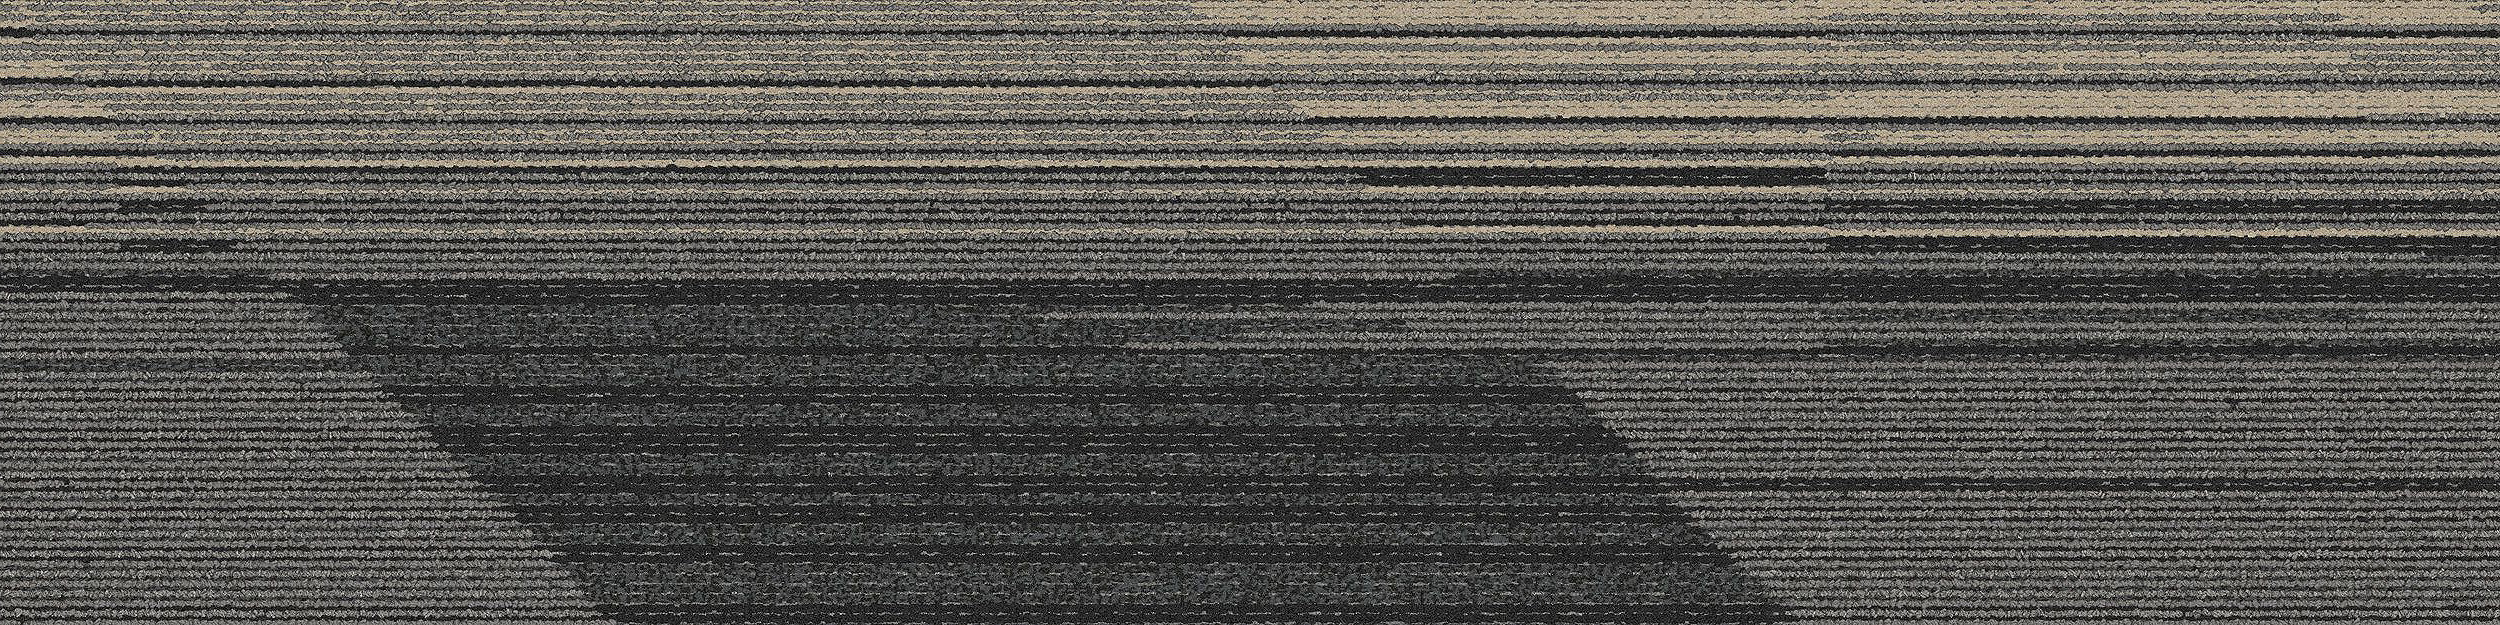 CT113 Carpet Tile In Onyx imagen número 4